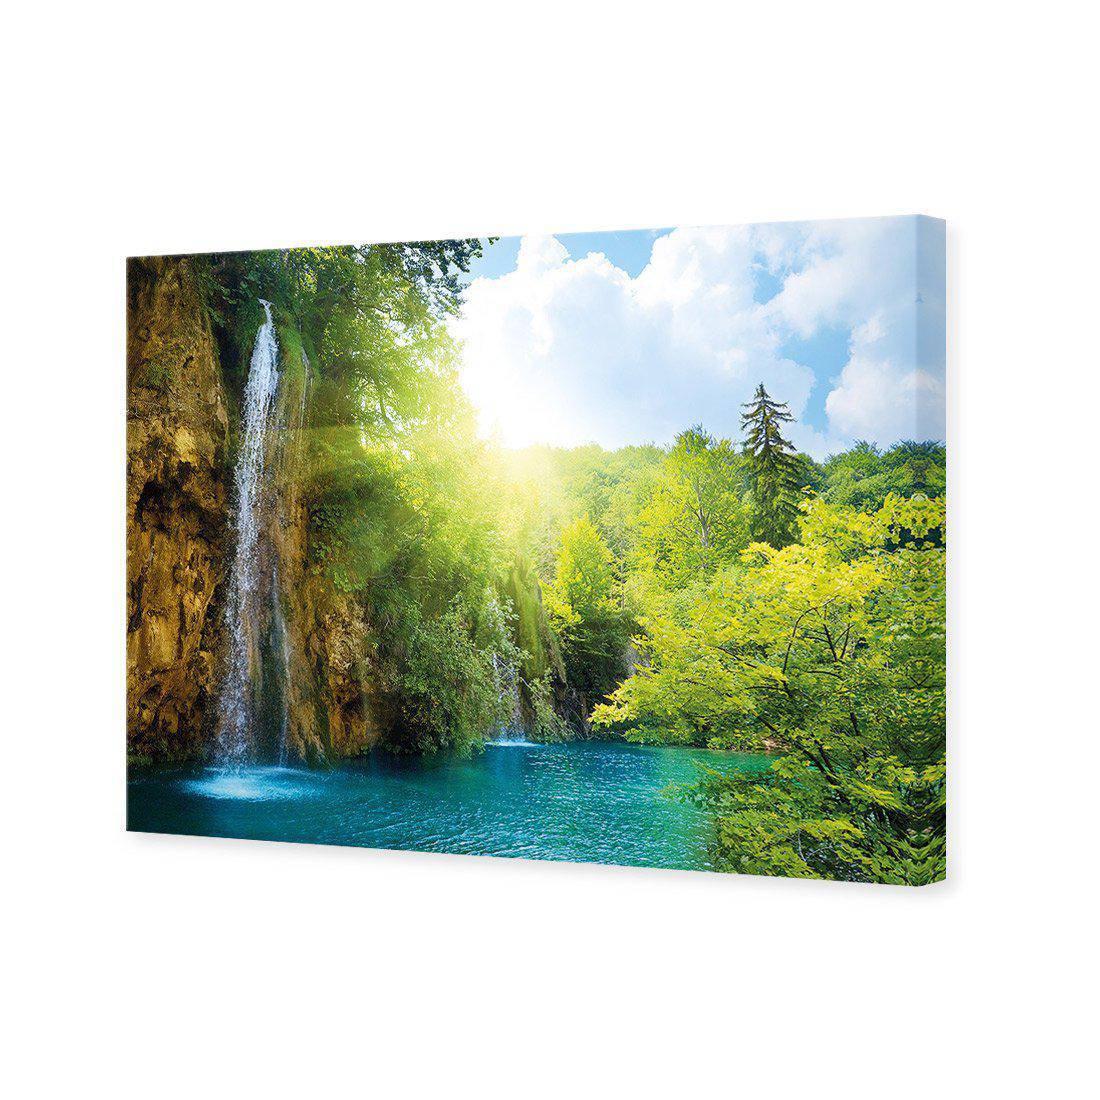 Summer Waterfall Canvas Art-Canvas-Wall Art Designs-45x30cm-Canvas - No Frame-Wall Art Designs